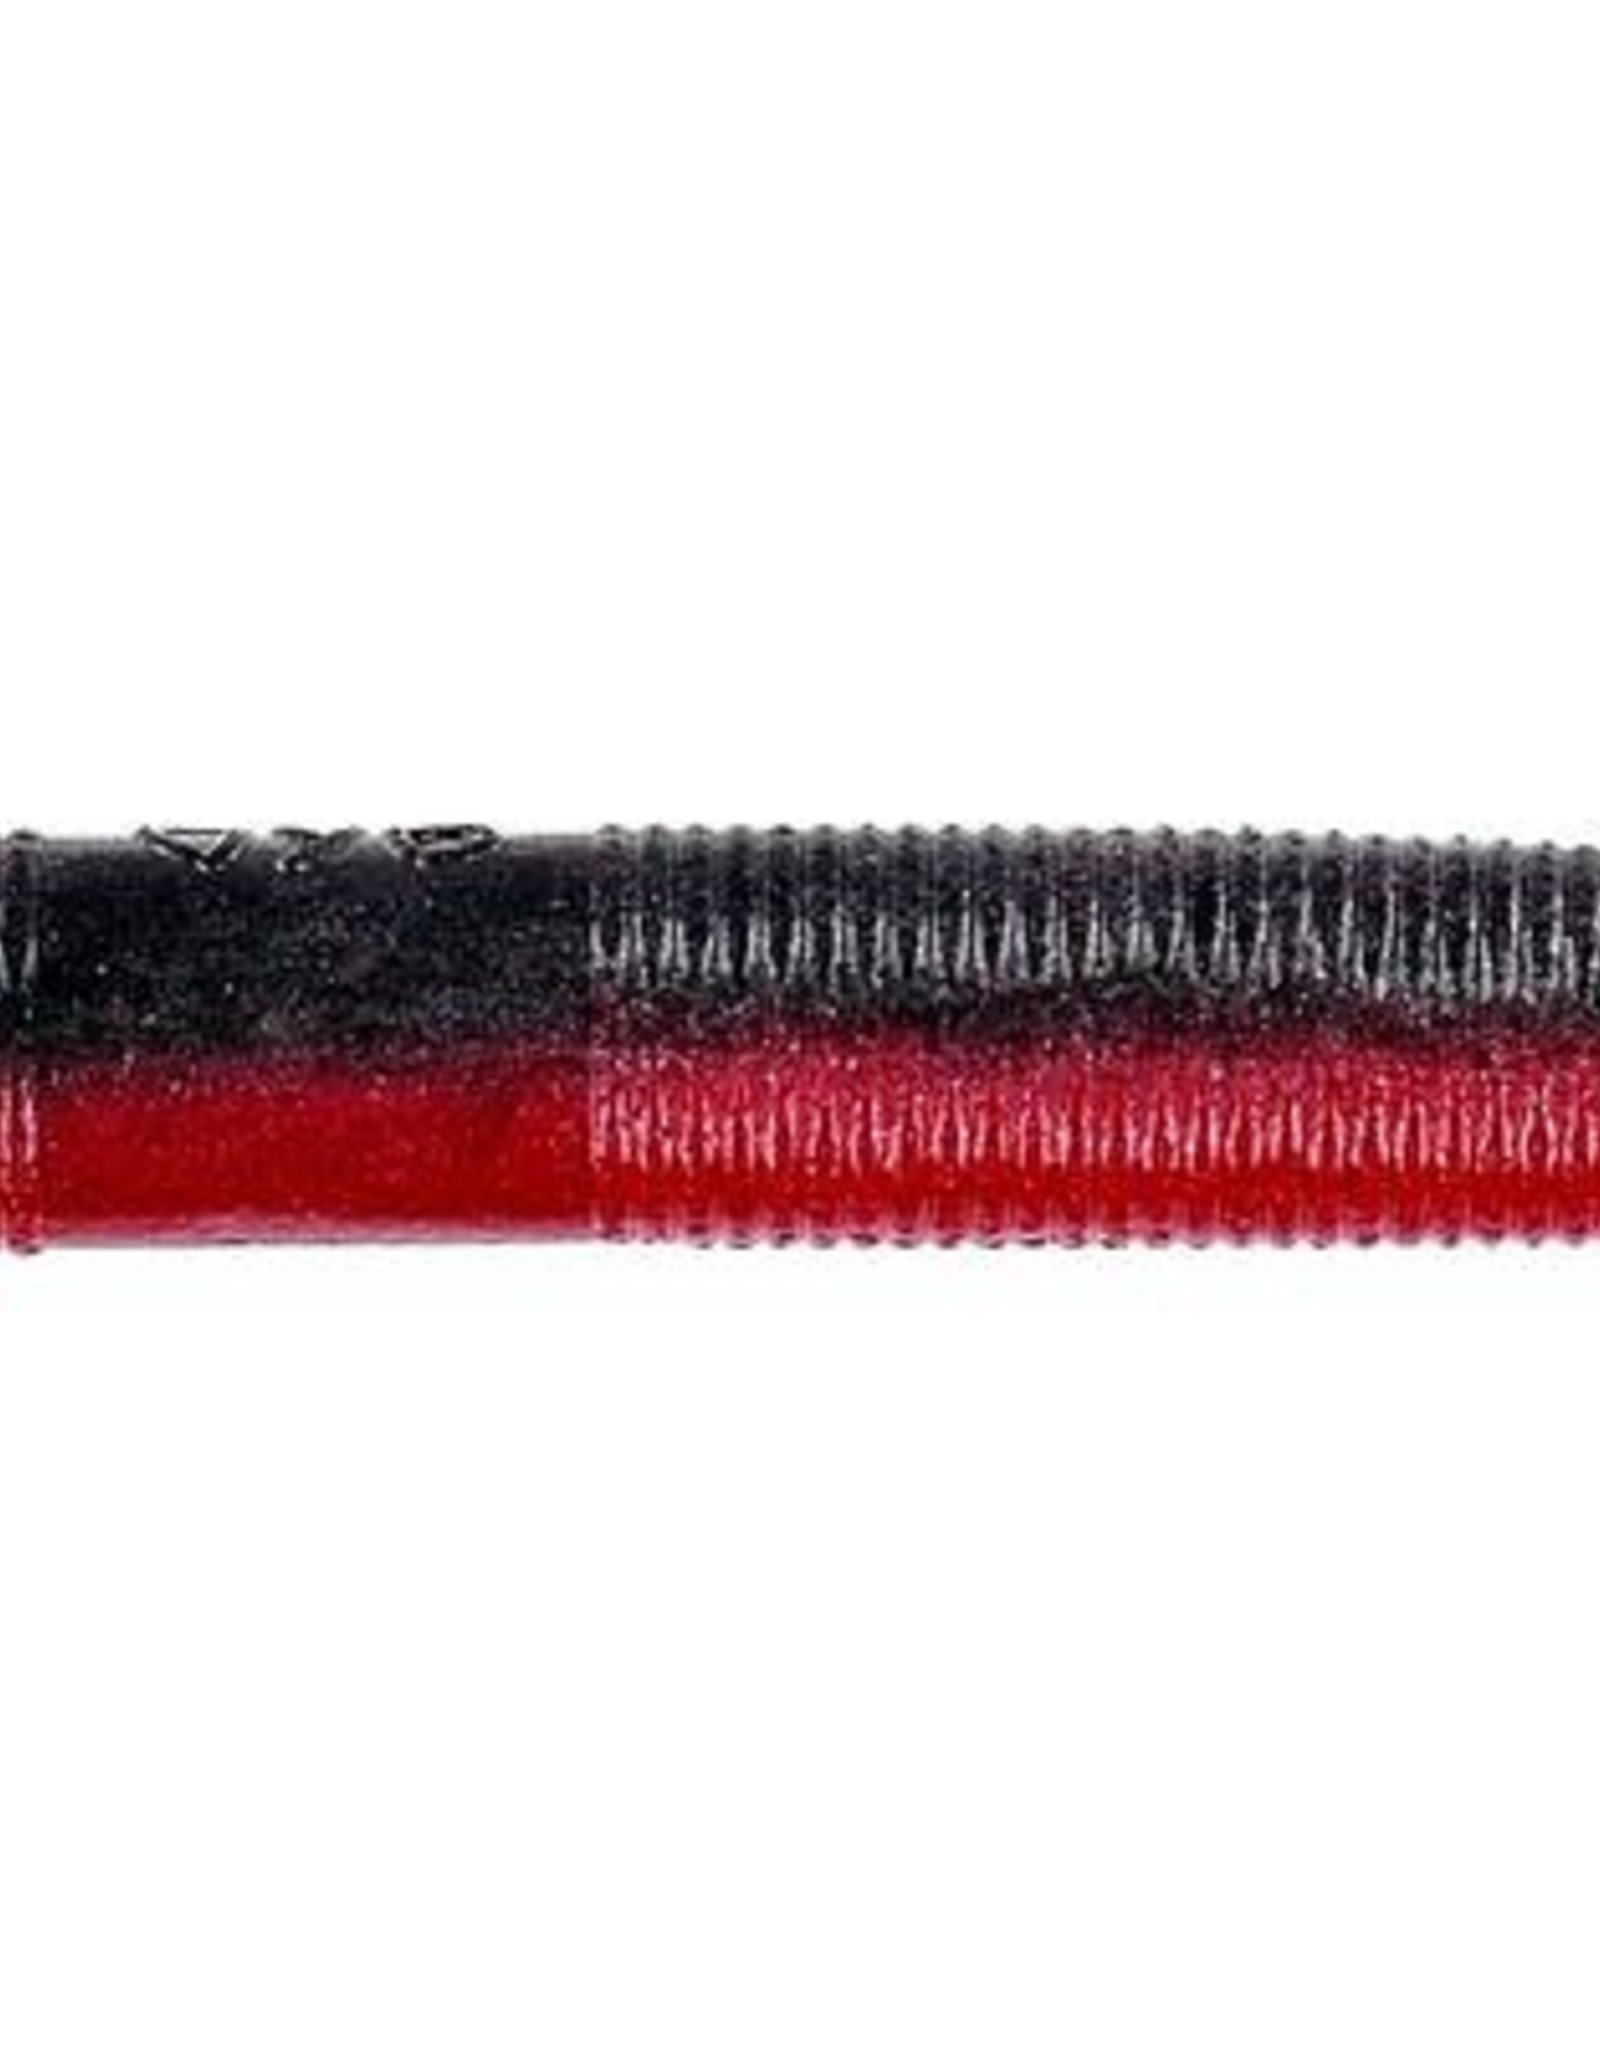 Yamamoto 10pk, Red Shad (Red & Black Yamamoto 9S-10-900 Senko Worm, 4